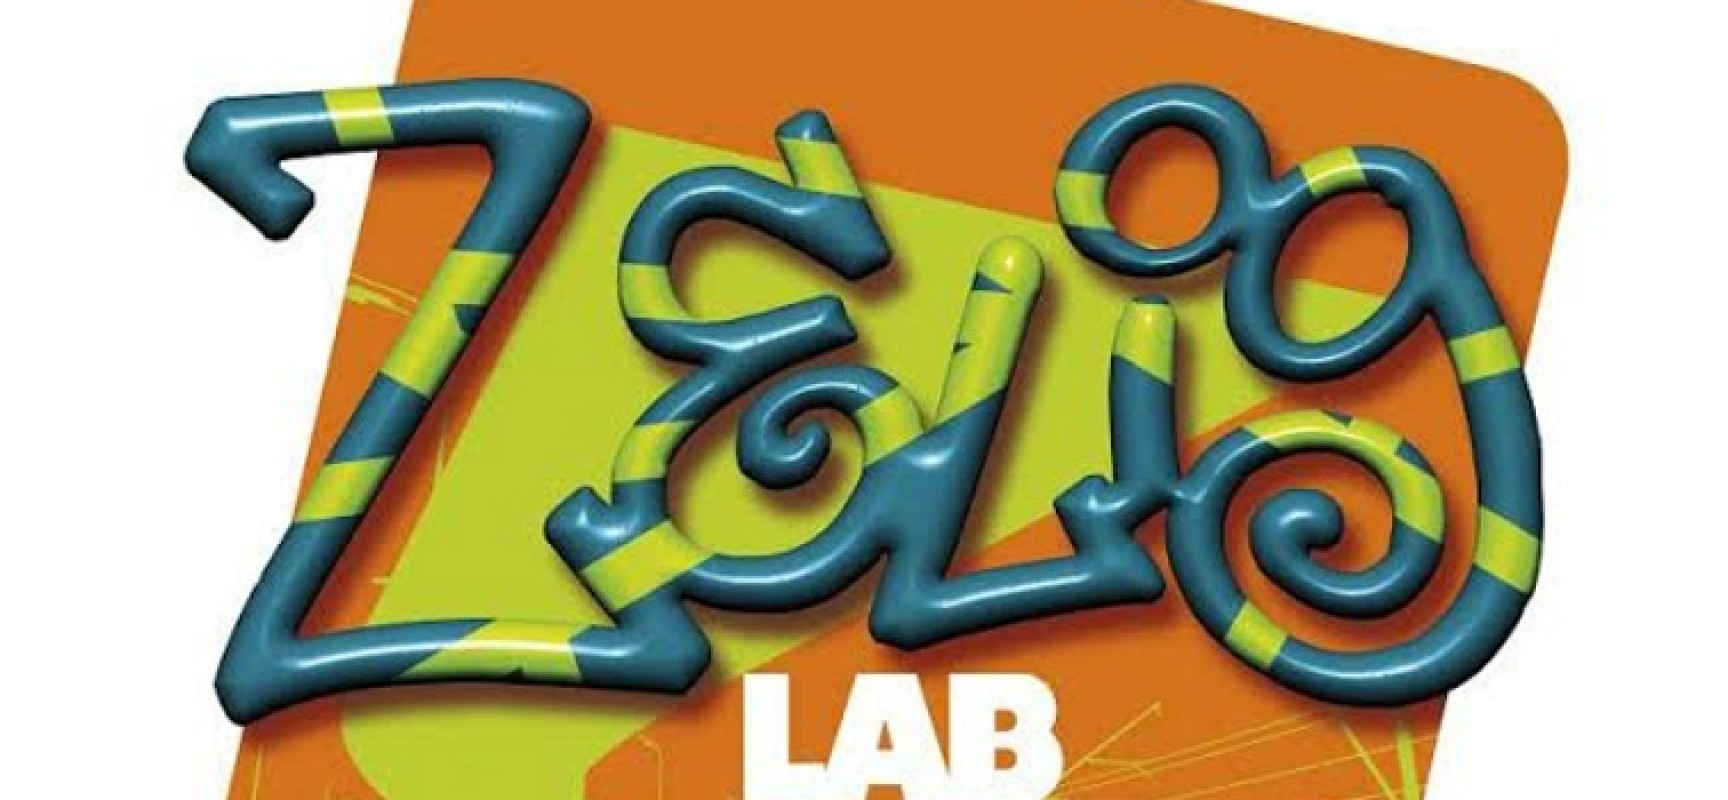 Questa sera Open Source ospita il secondo appuntamento della rassegna Zelig Lab